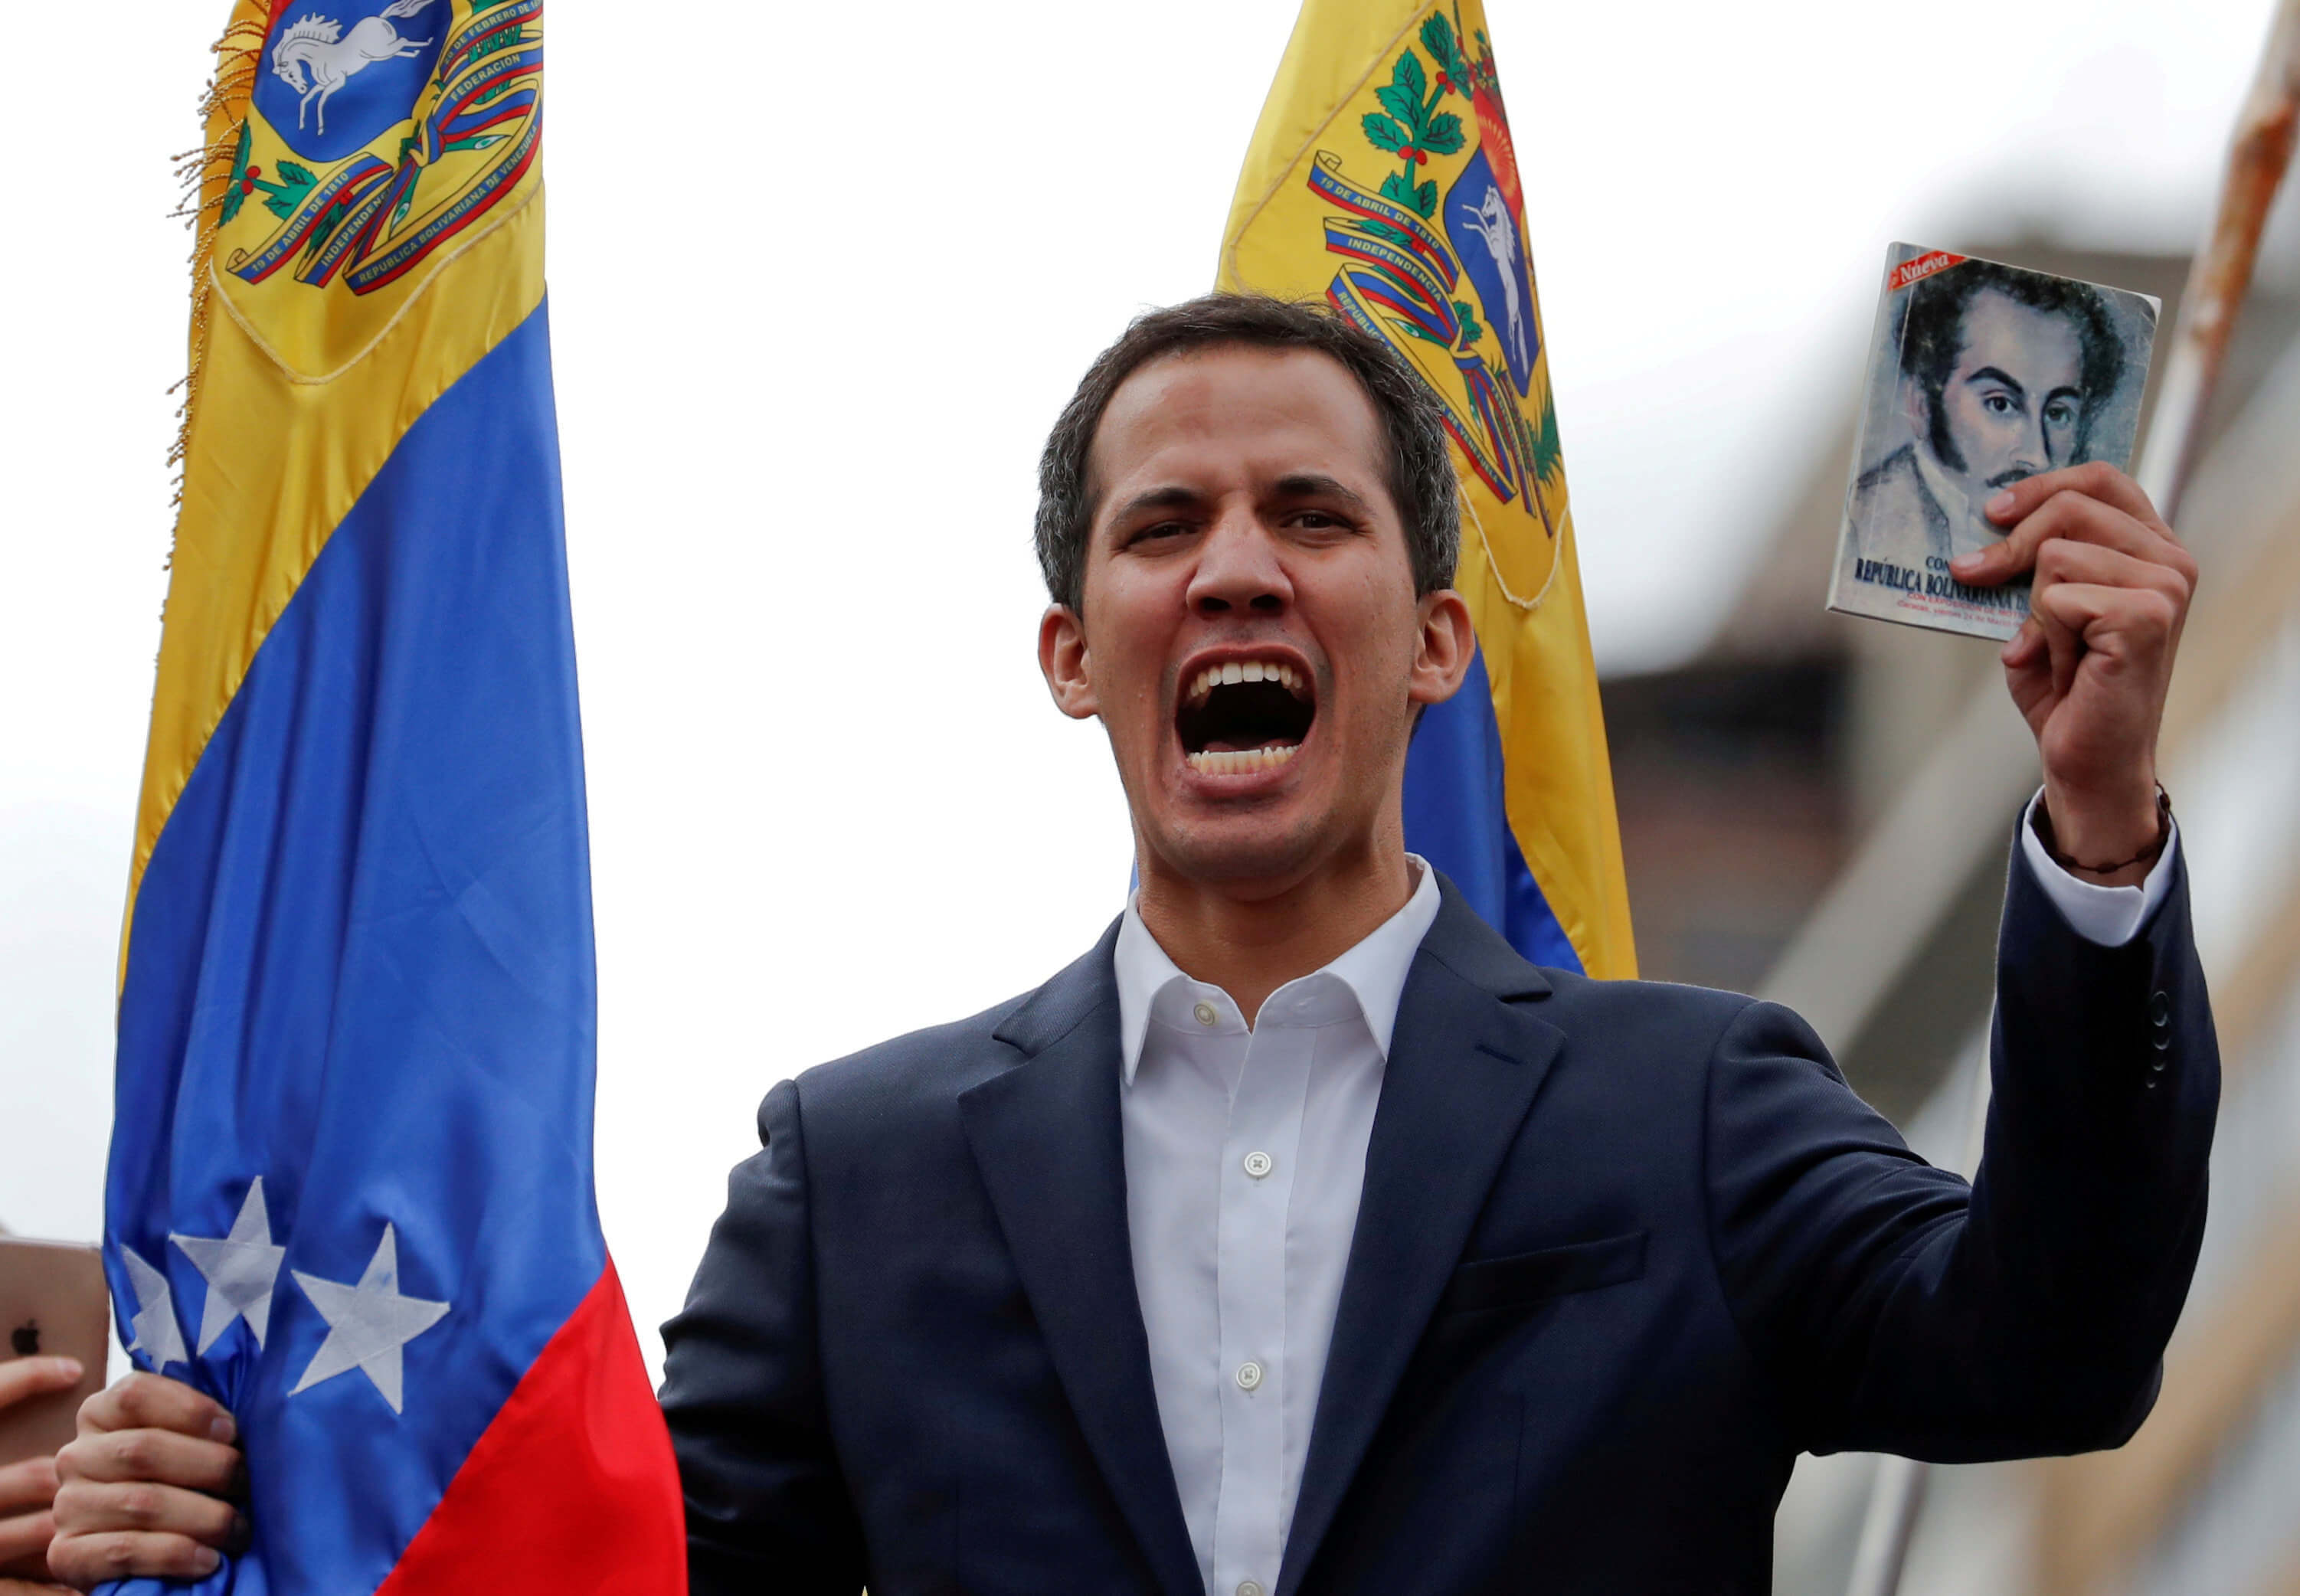 Βενεζουέλα: Ο Τραμπ συνεχάρη την Γκουαϊδό για την αυτοανακήρυξη του σε πρόεδρο